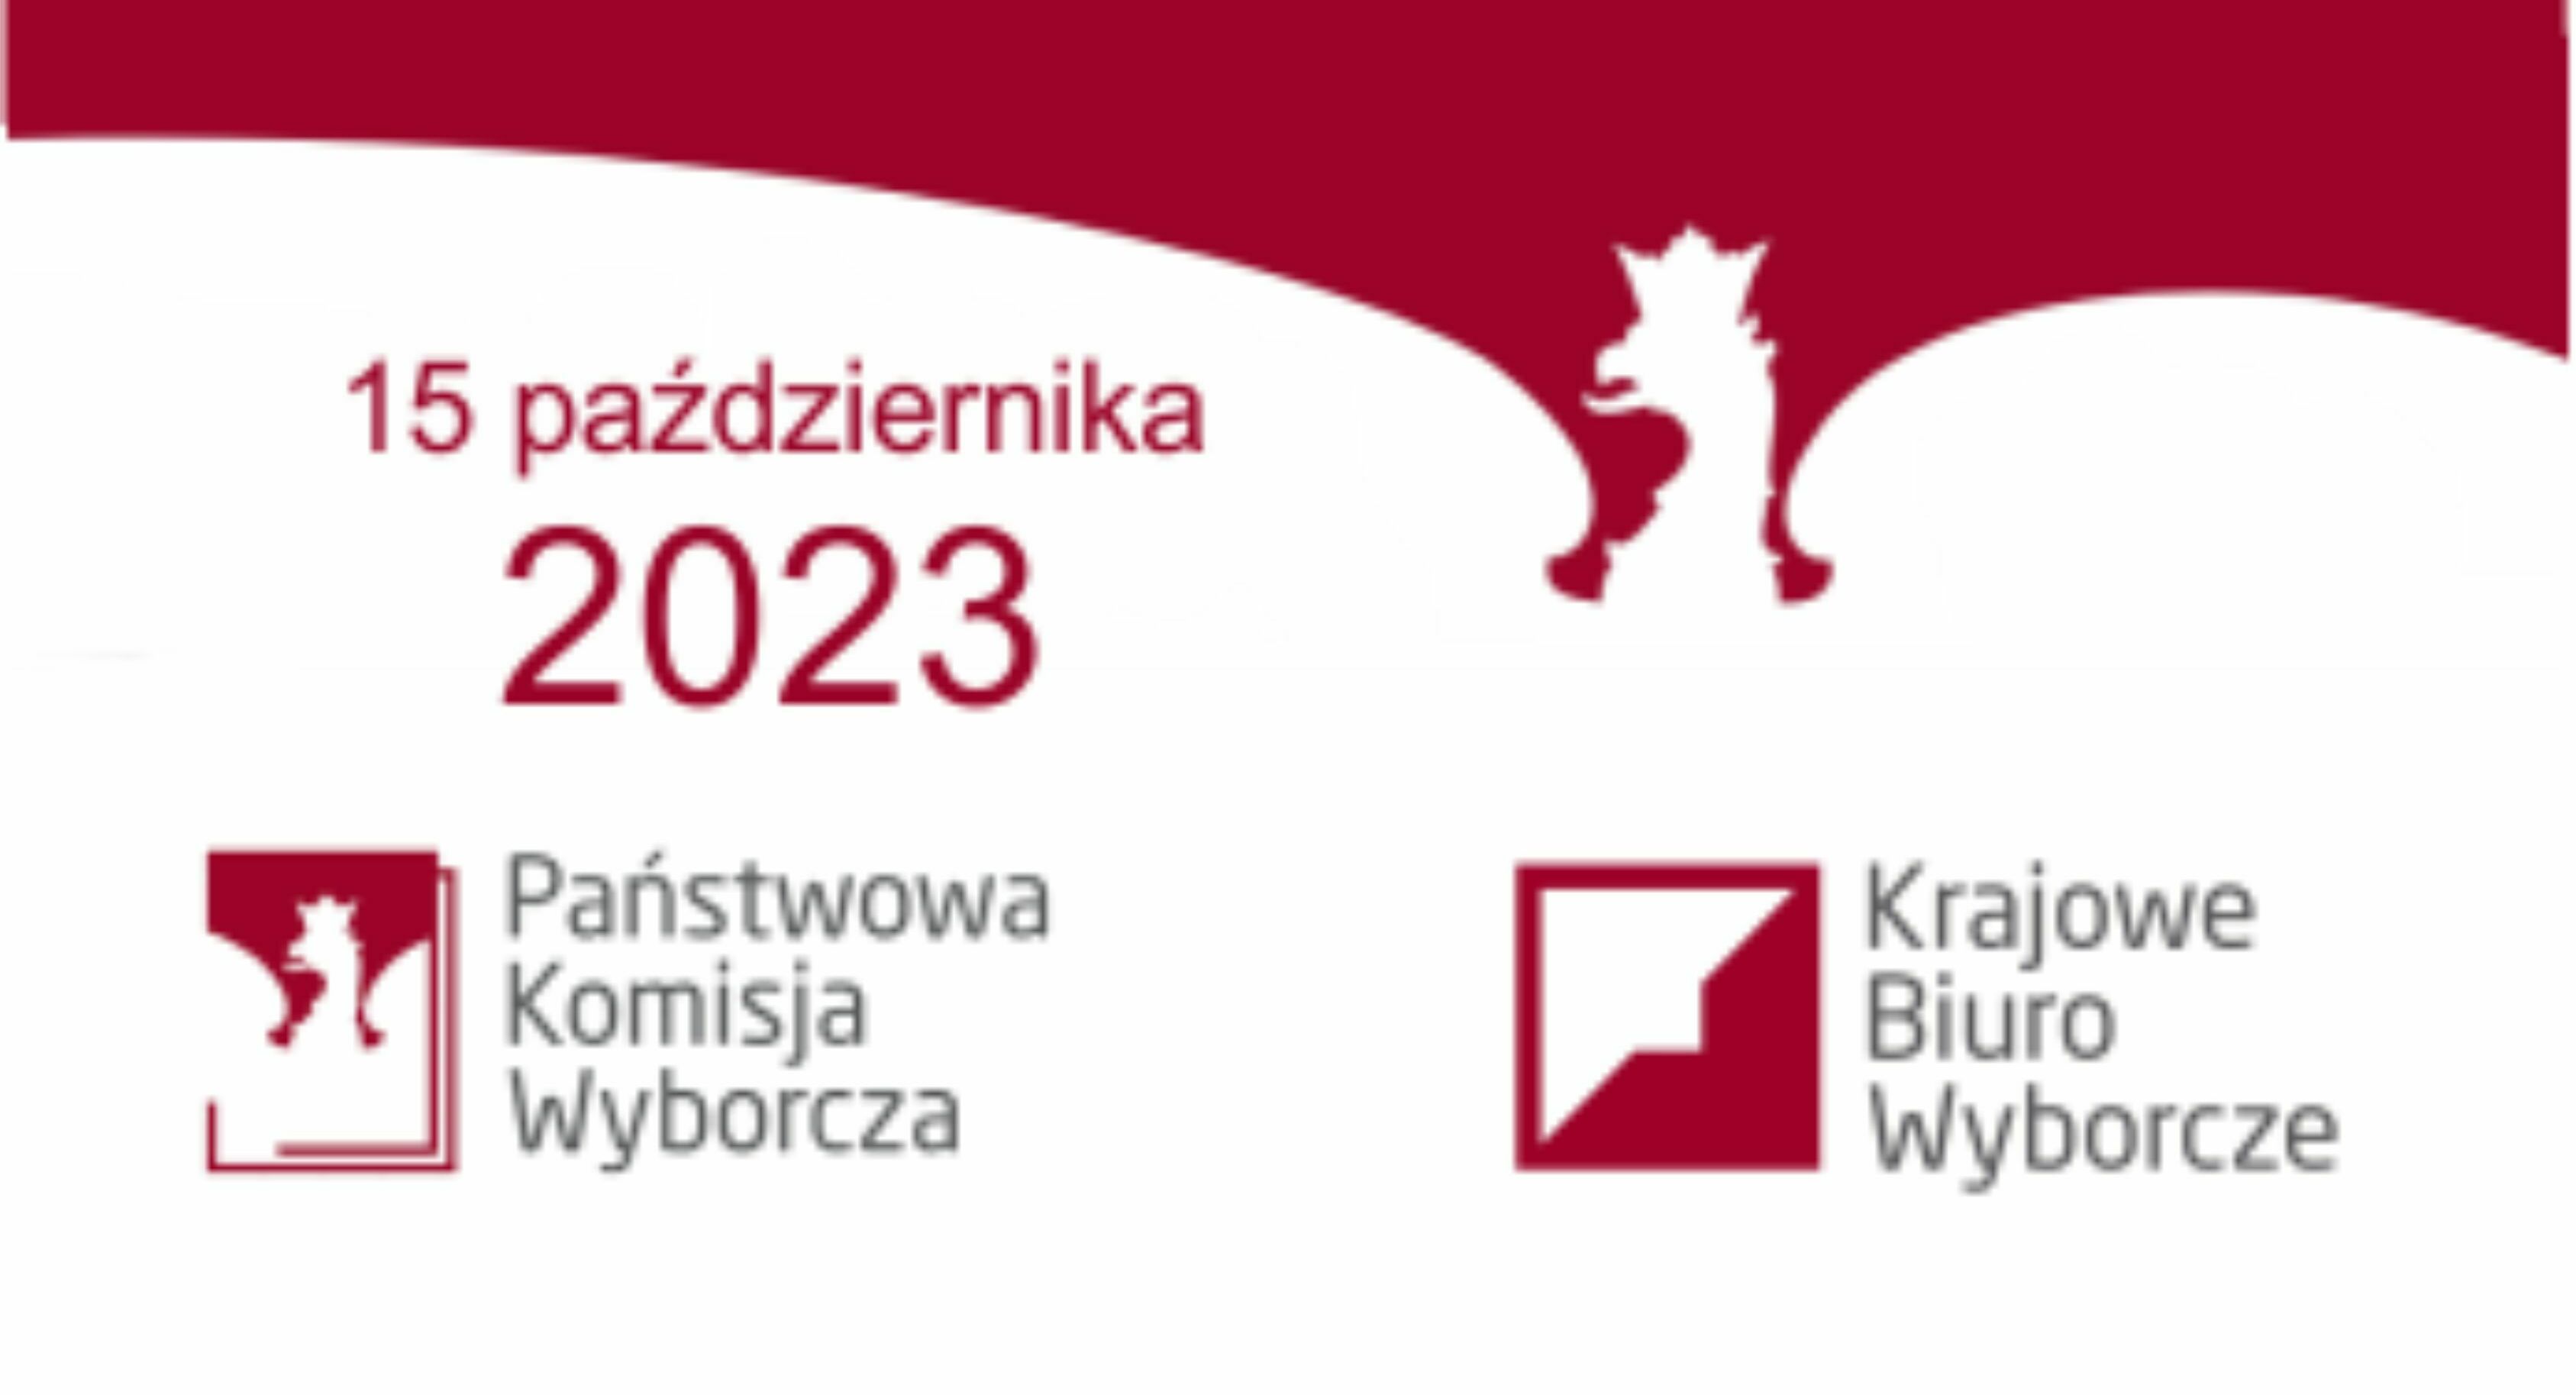 Wybory do Sejmu i Senatu
Rzeczypospolitej Polskiej 2023